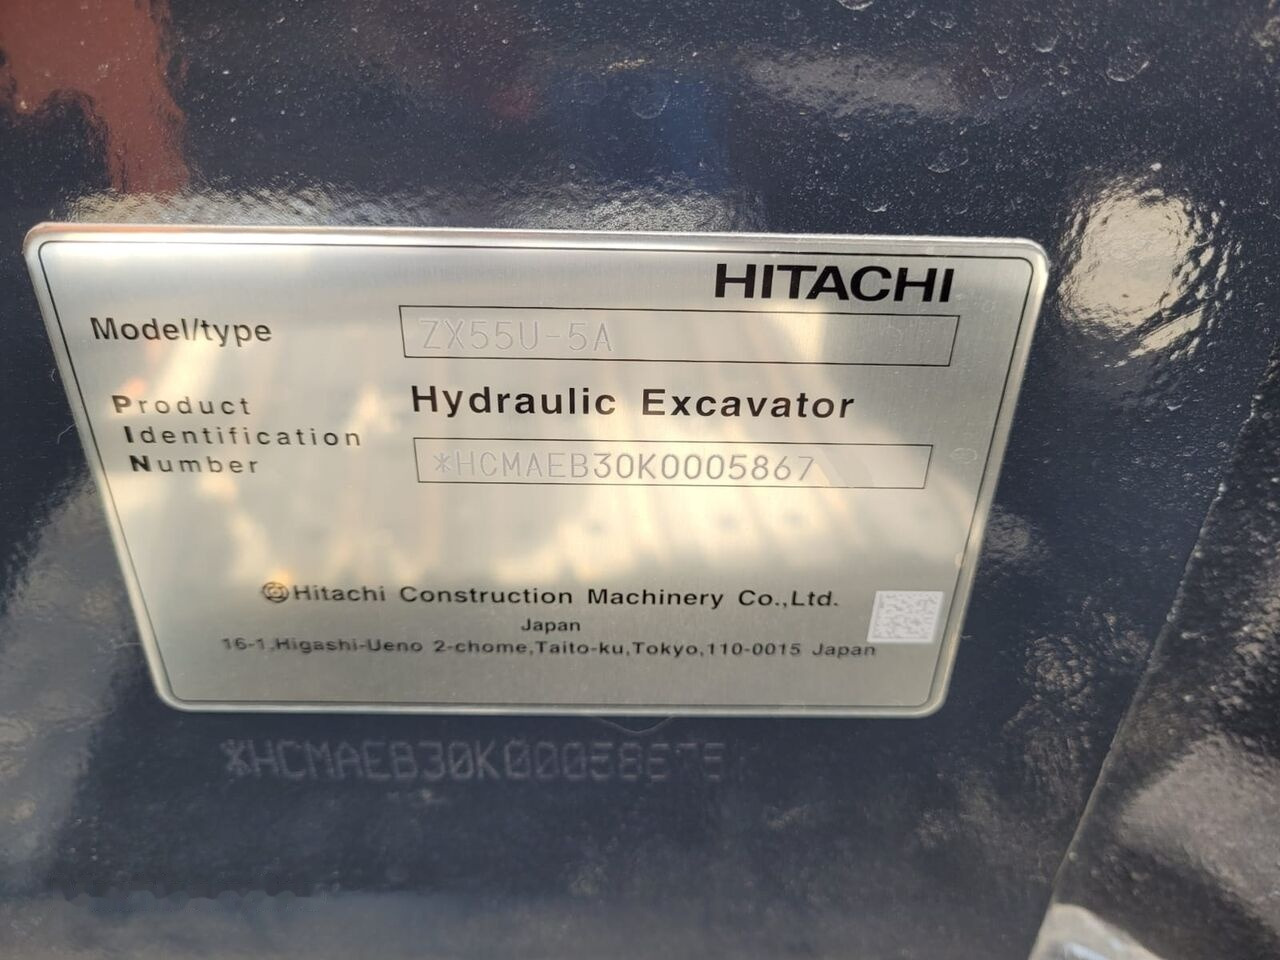 Novu Mini bager Hitachi ZX 55U-5A CLR - NOT FOR SALE IN THE EU/NO CE MARKING: slika 10